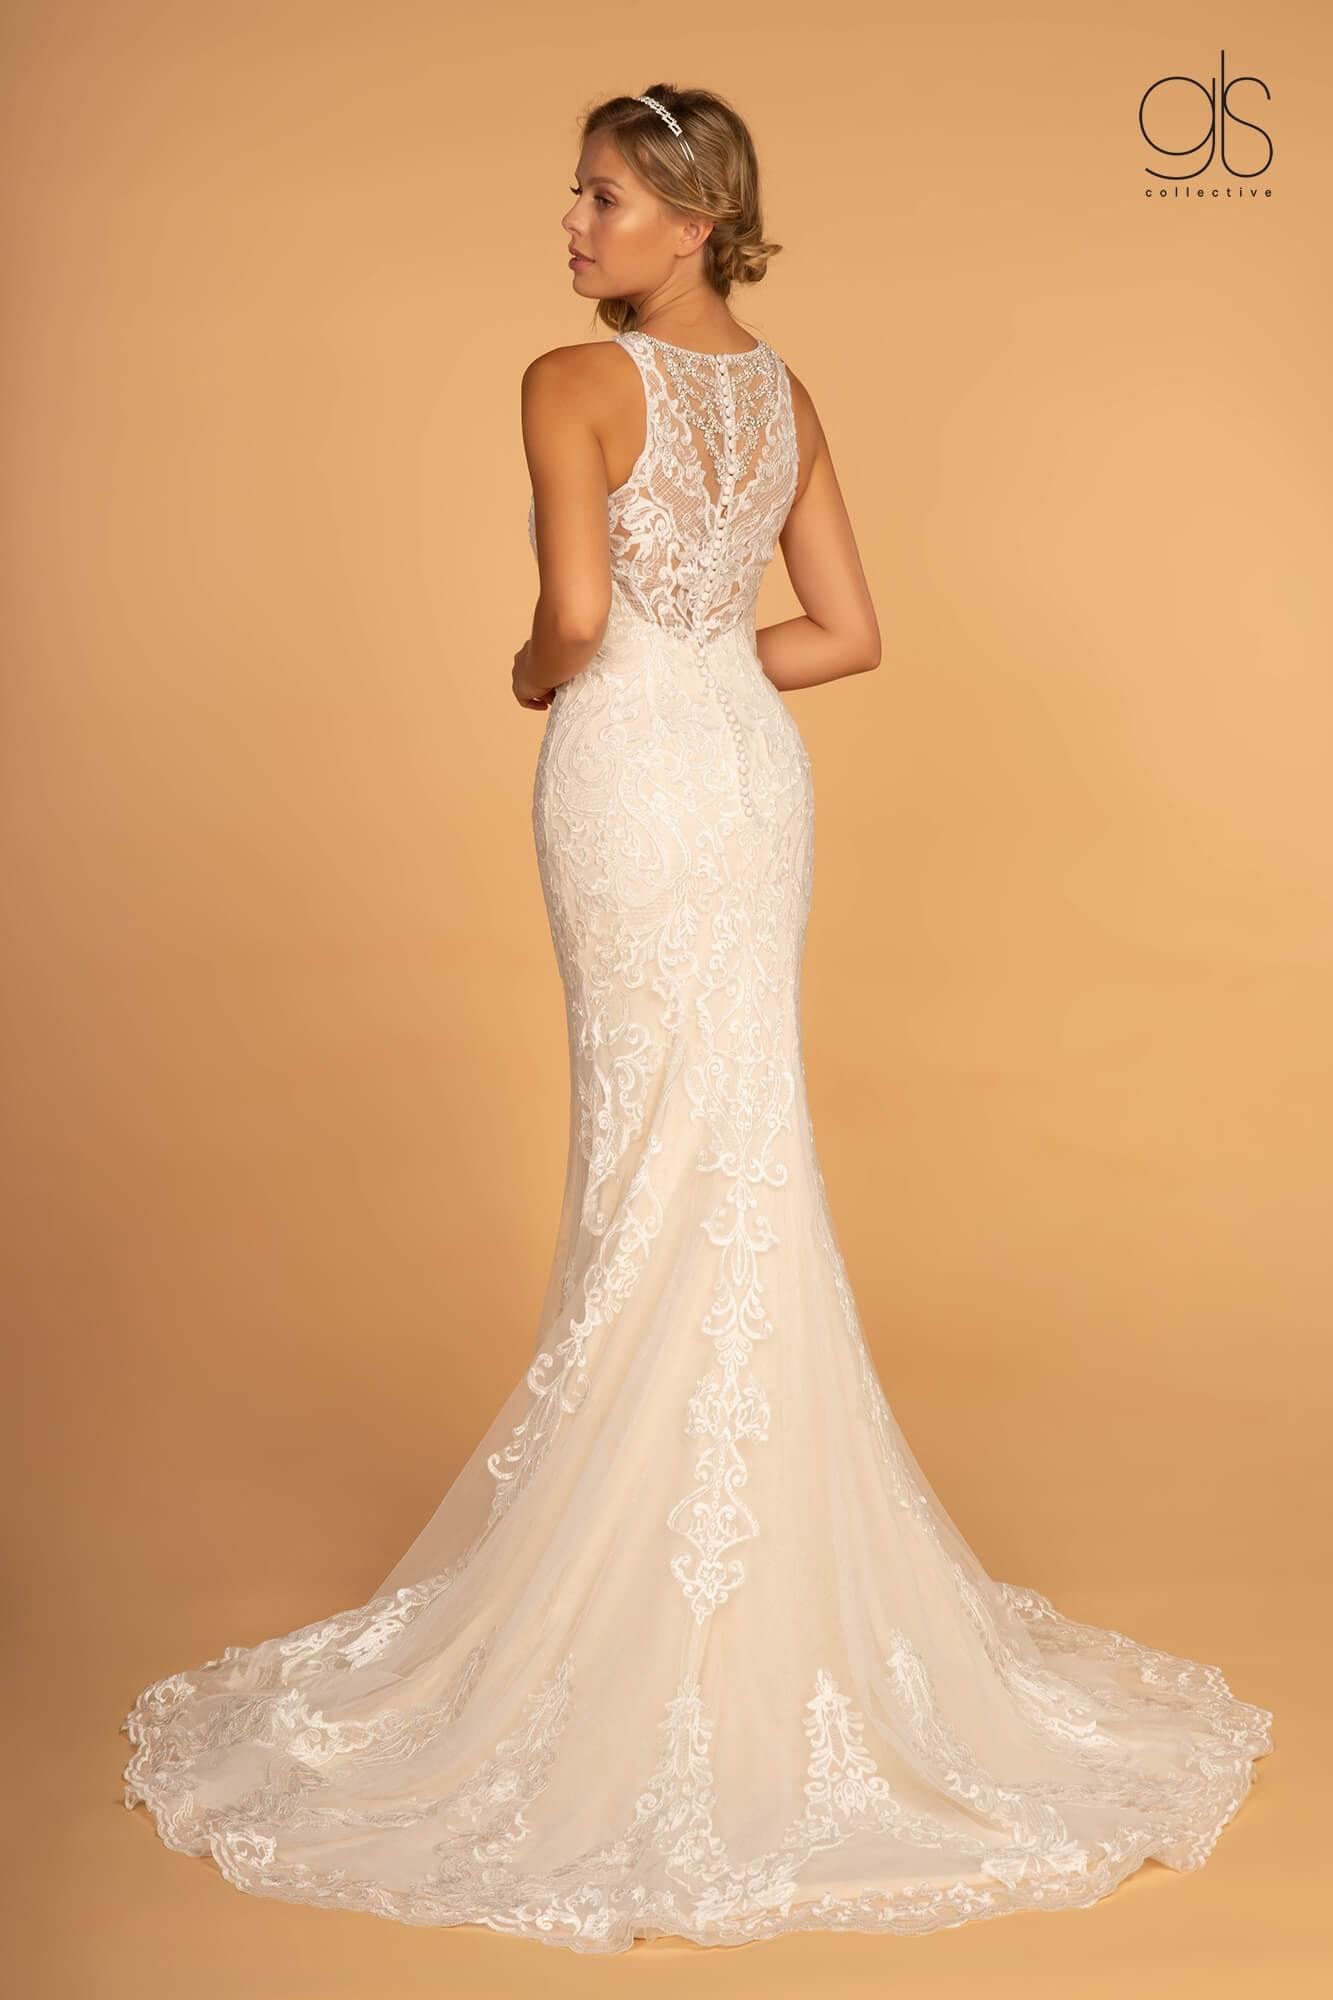 Fitted Long Wedding Dress - The Dress Outlet Elizabeth K